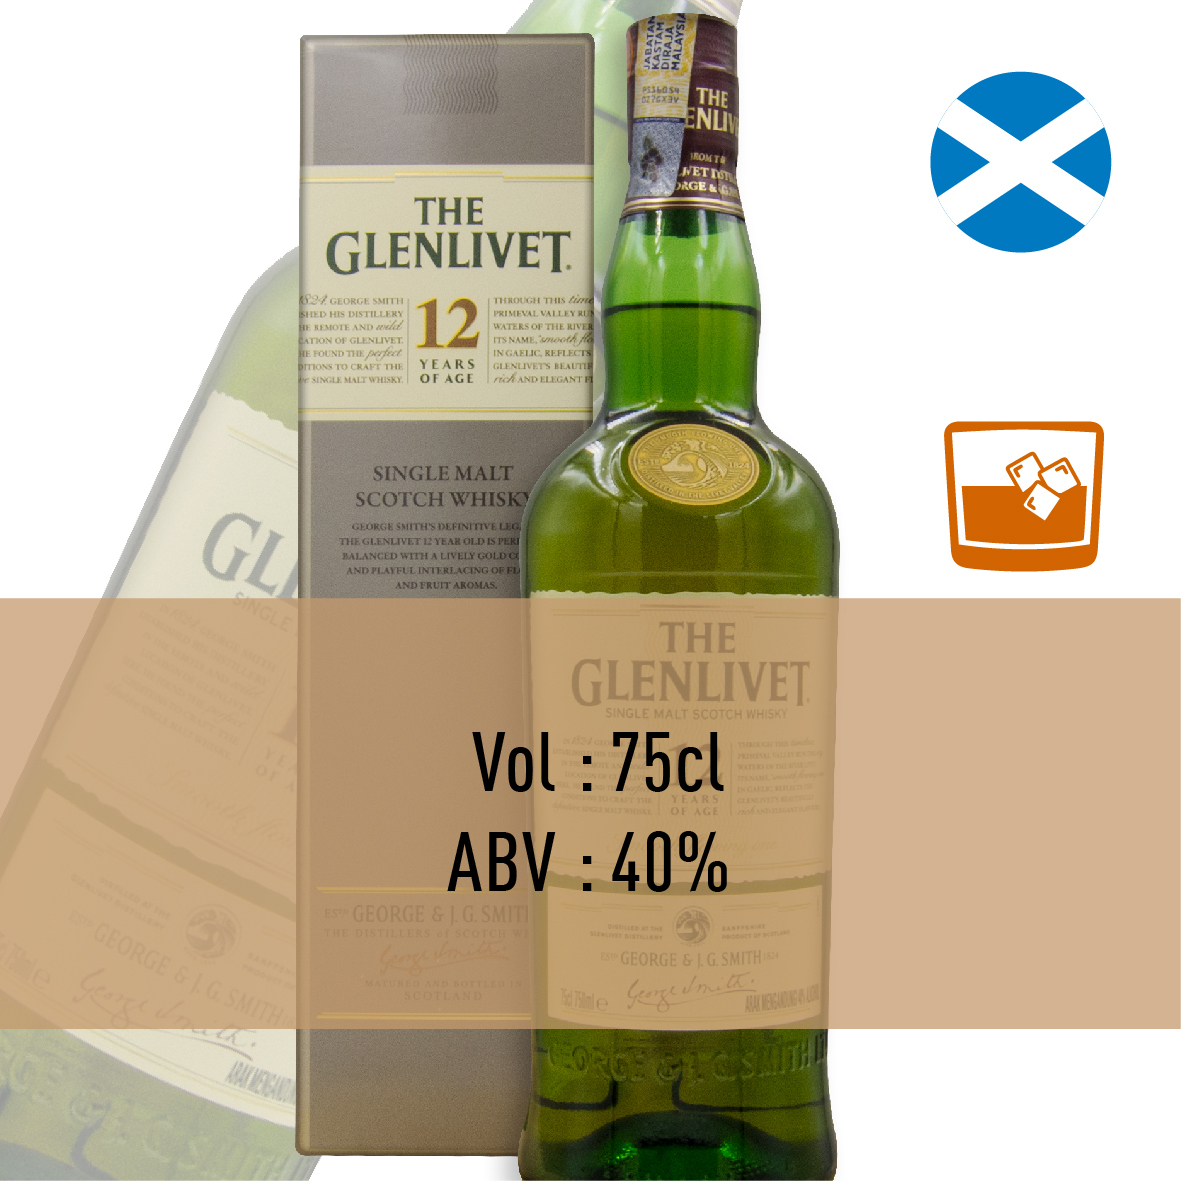 10-THE GLENLIVET 12 YEAR(Scotland)-02.jpg